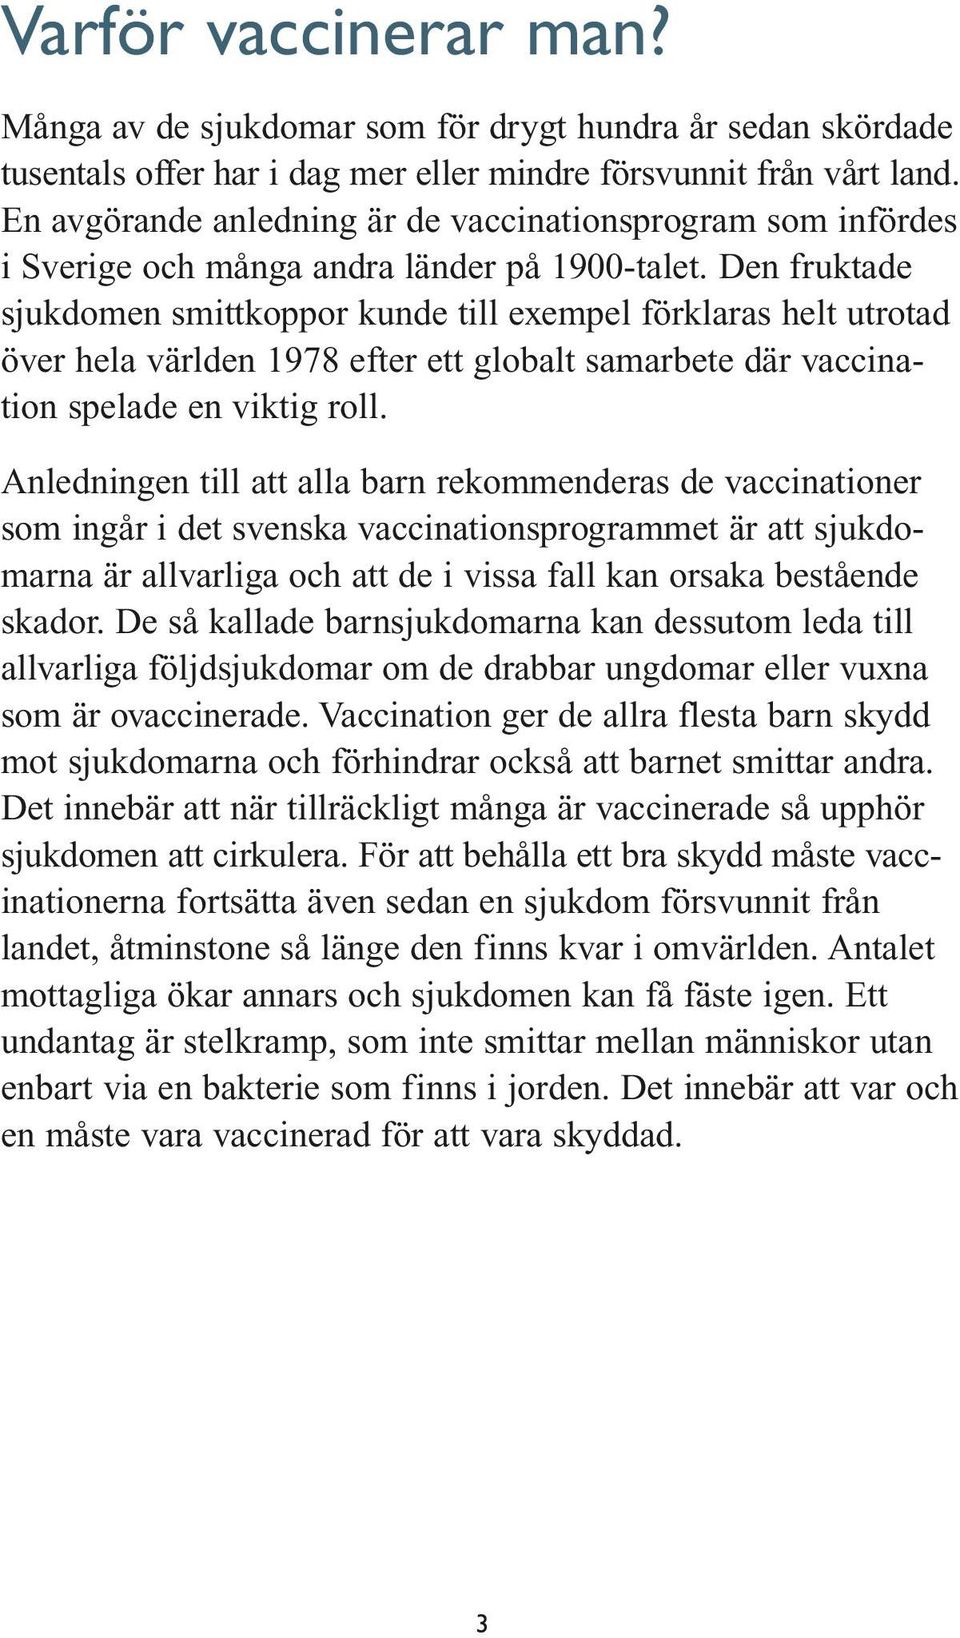 Den fruktade sjukdomen smittkoppor kunde till exempel förklaras helt utrotad över hela världen 1978 efter ett globalt samarbete där vaccination spelade en viktig roll.